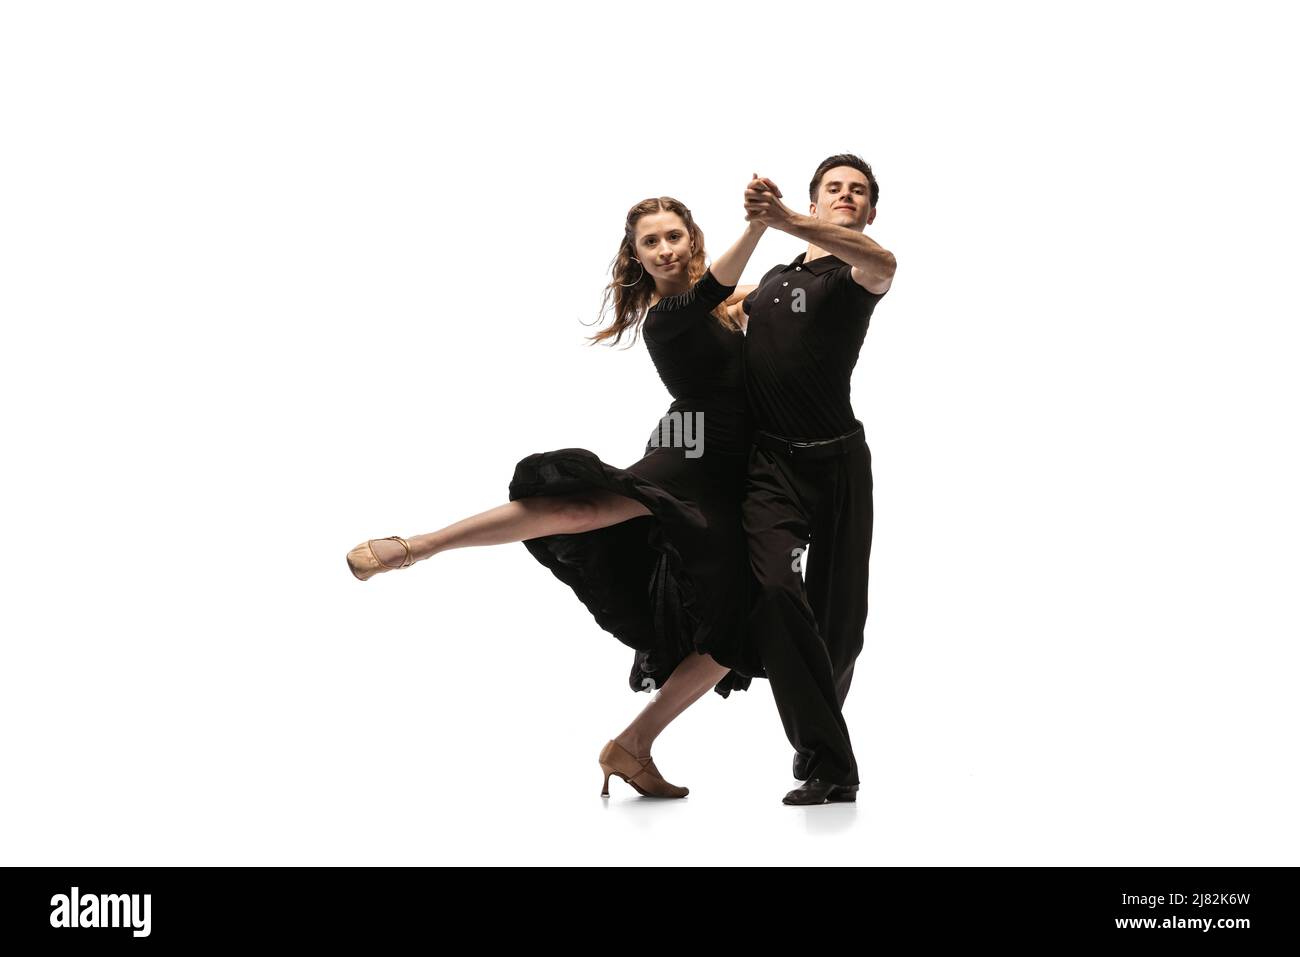 Portrait von jungen anmutigen Tänzern in schwarzen Bühnenoutfits tanzen Ballsaal Tanz isoliert auf weißem Hintergrund. Konzept von Kunst, Schönheit, Musik Stockfoto